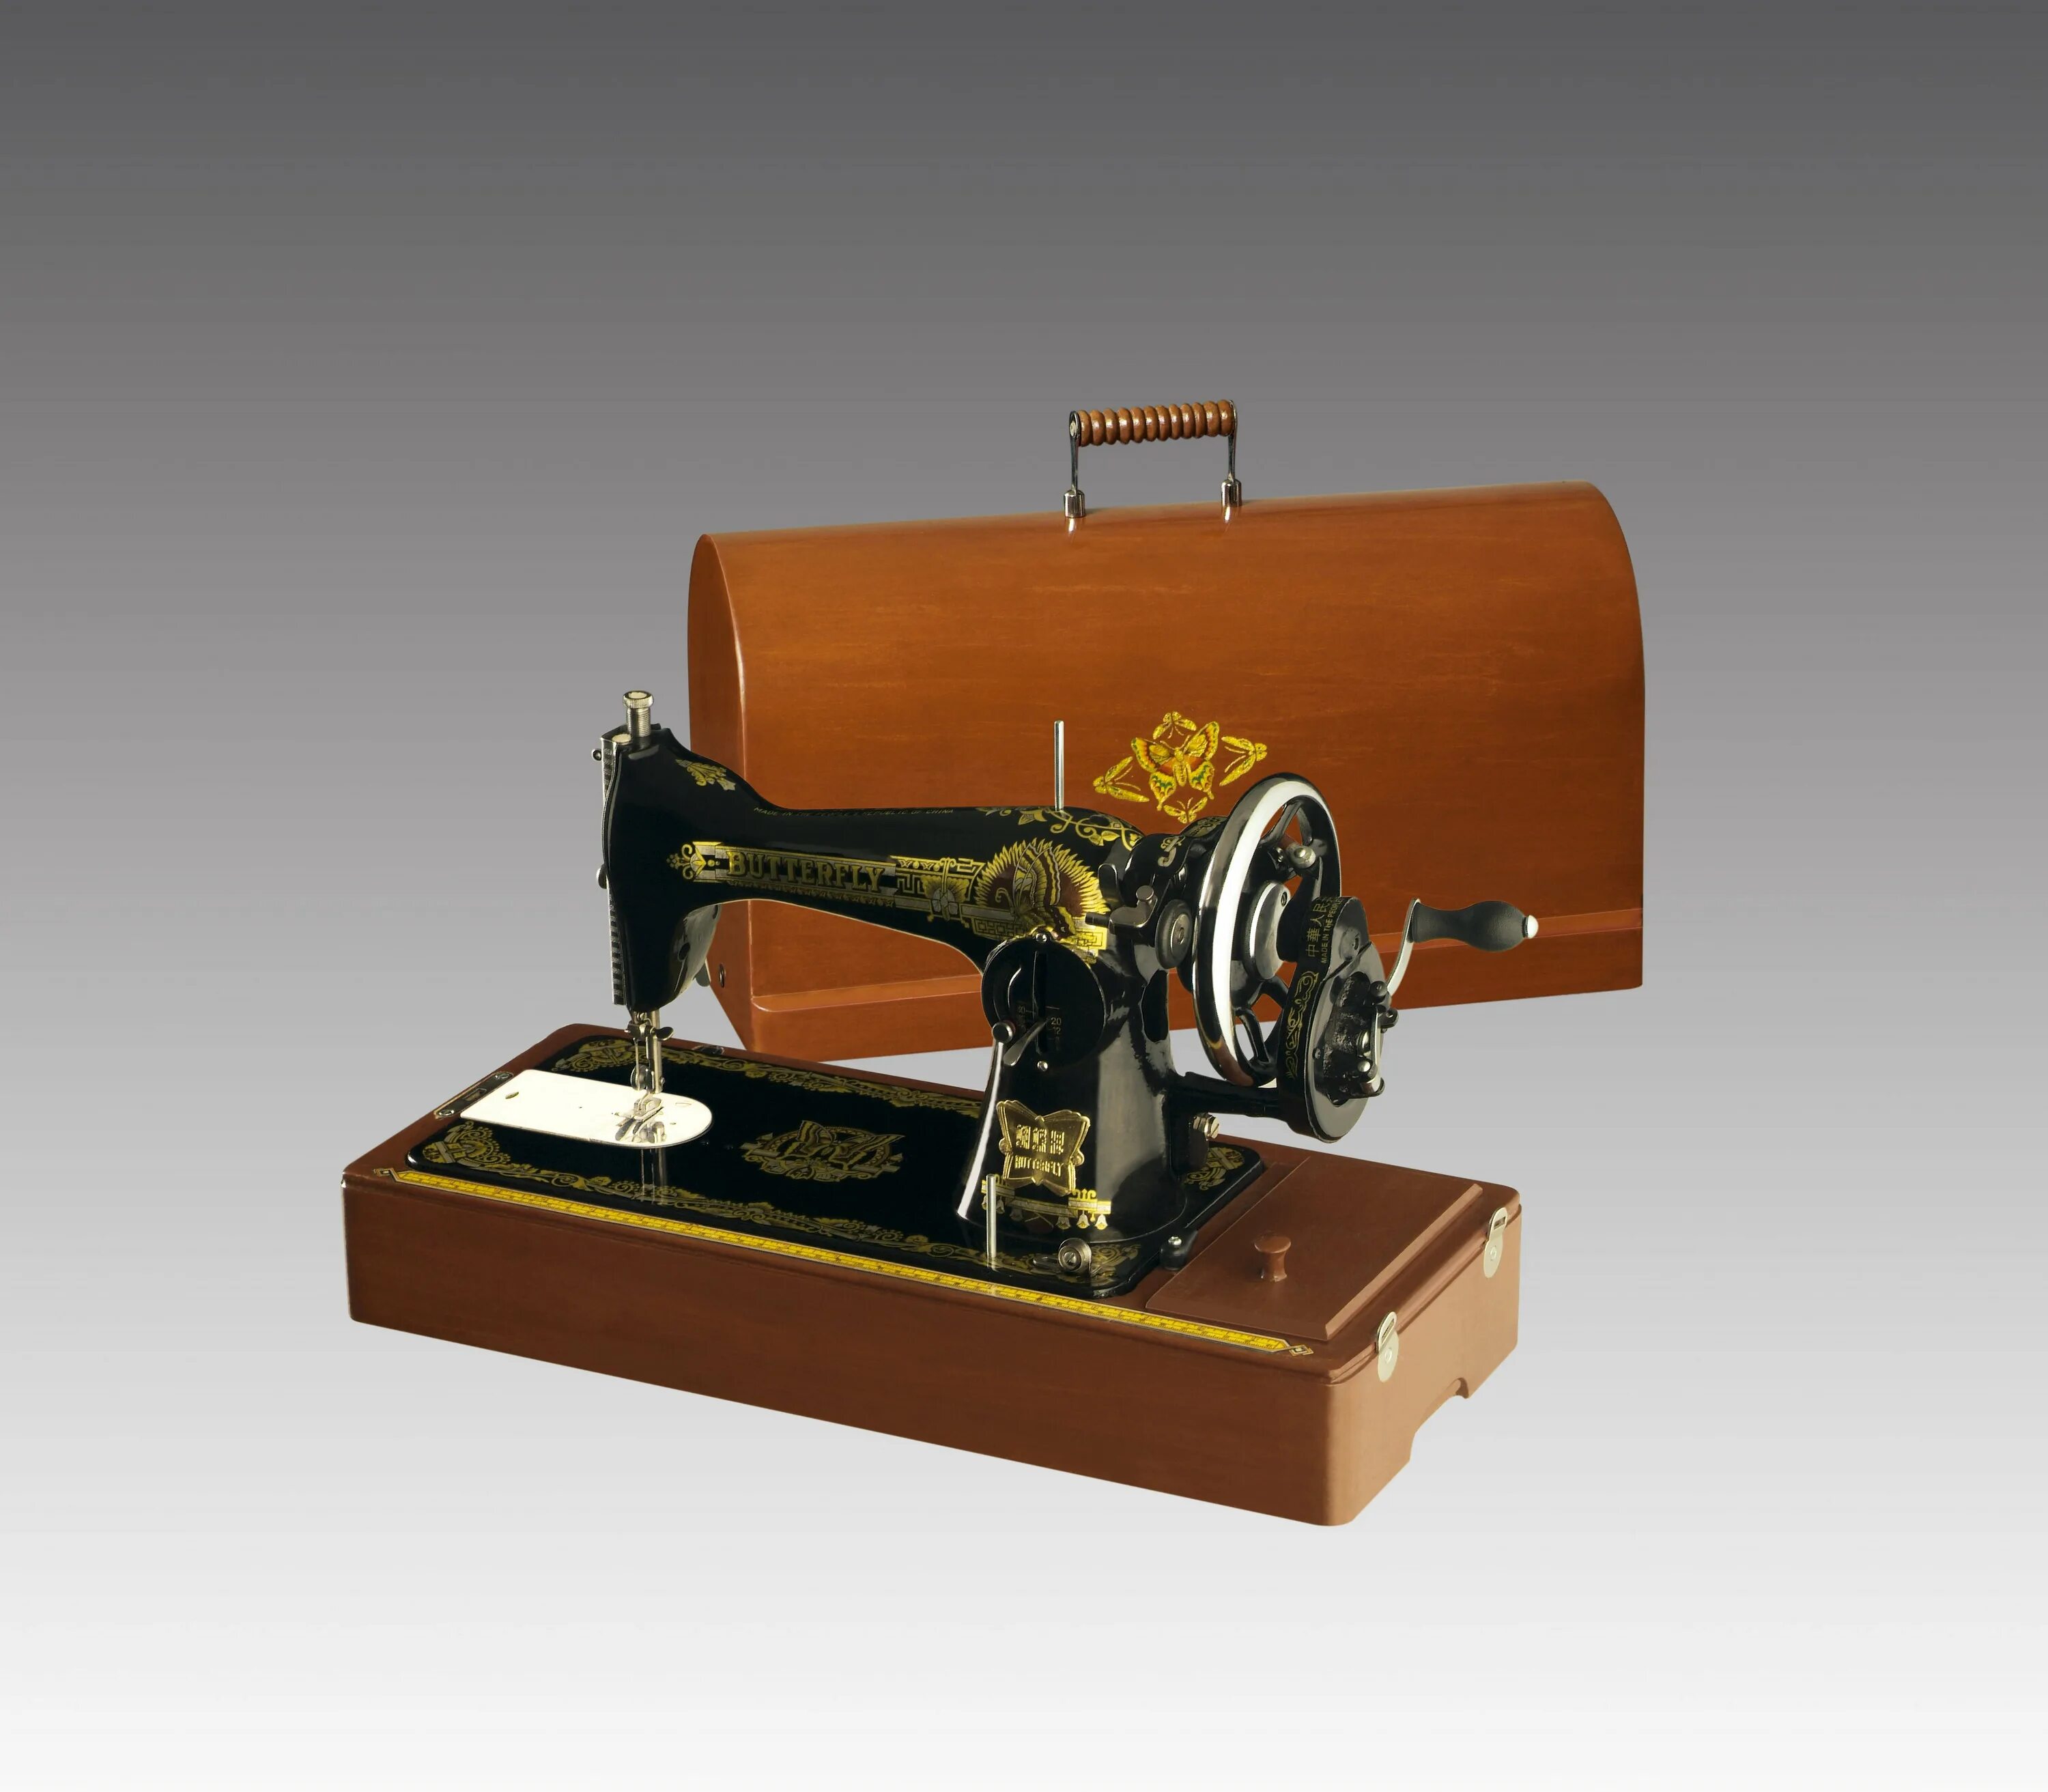 Швейные машинки в твери. Швейная машинка Butterfly jg6001. Швейная машинка Butterfly 1958г. Китайская швейная машинка Баттерфляй. Баттерфляй швейная машинка 1956.